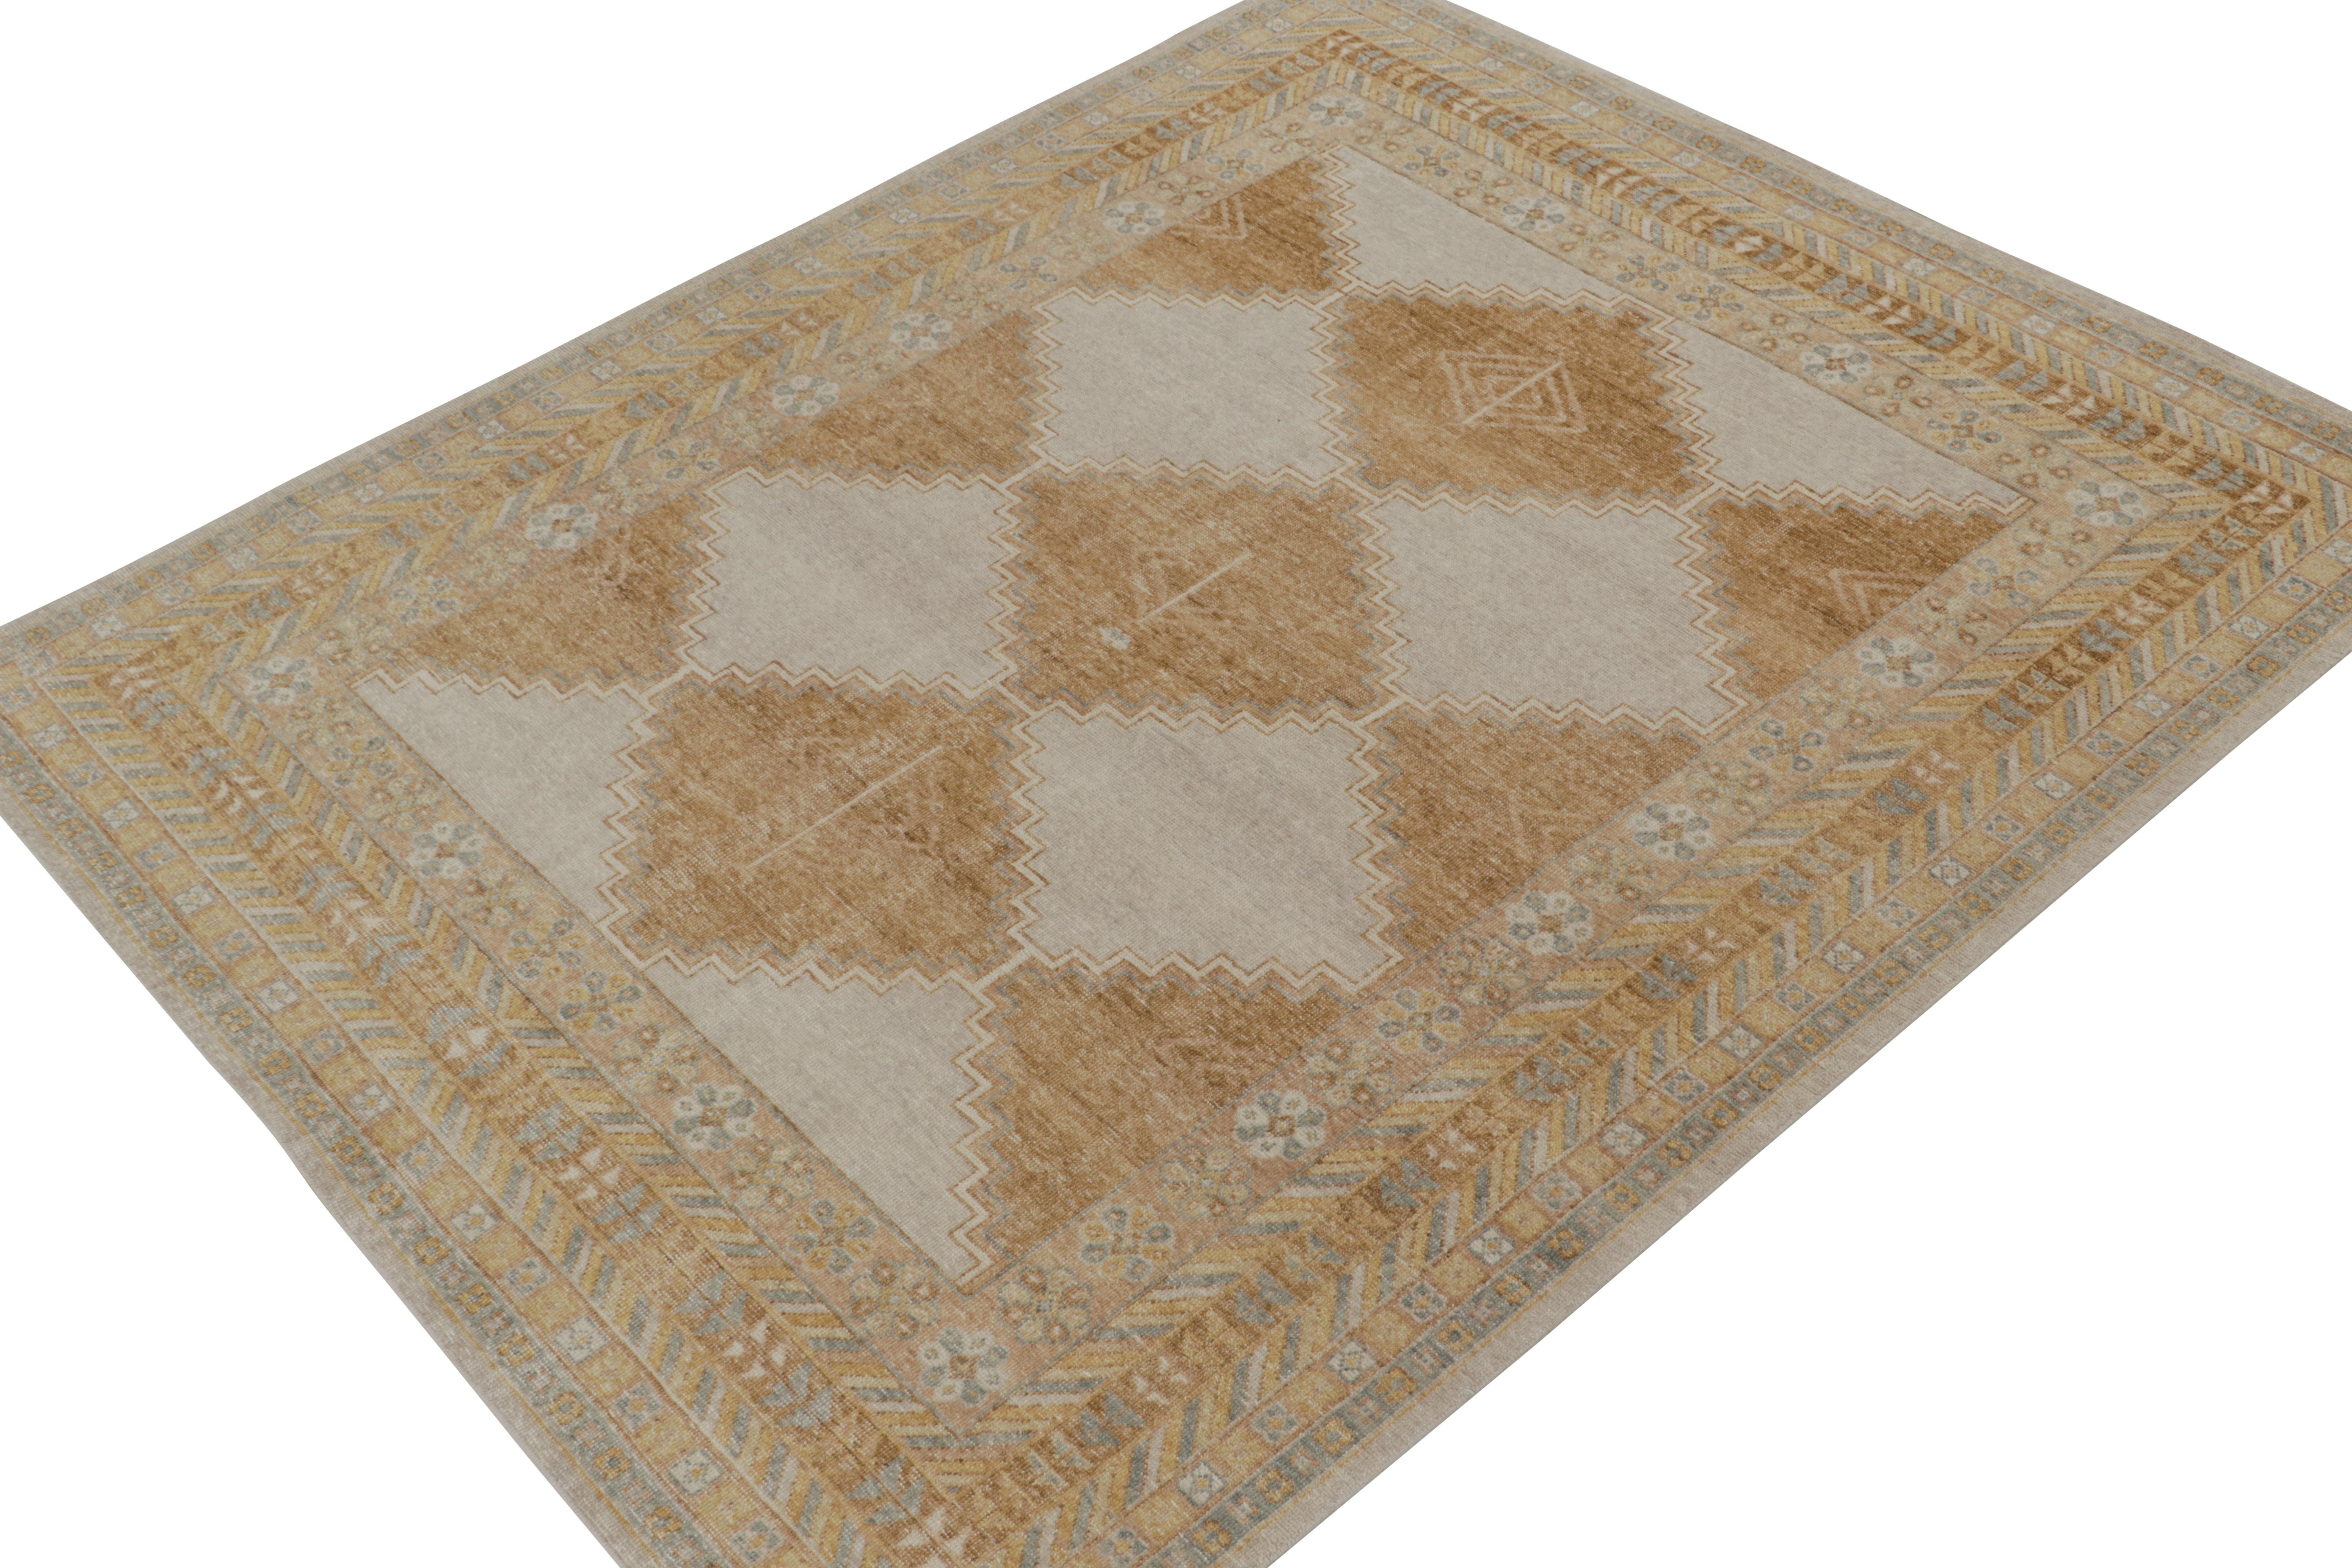 Ce tapis 8x10 est un nouvel ajout à la Collection Homage de Rug & Kilim. Noué à la main en laine et en coton, il reprend le motif d'un tapis tribal ancien dans une nouvelle interprétation de la texture en détresse.

Sur le Design :

On ne peut